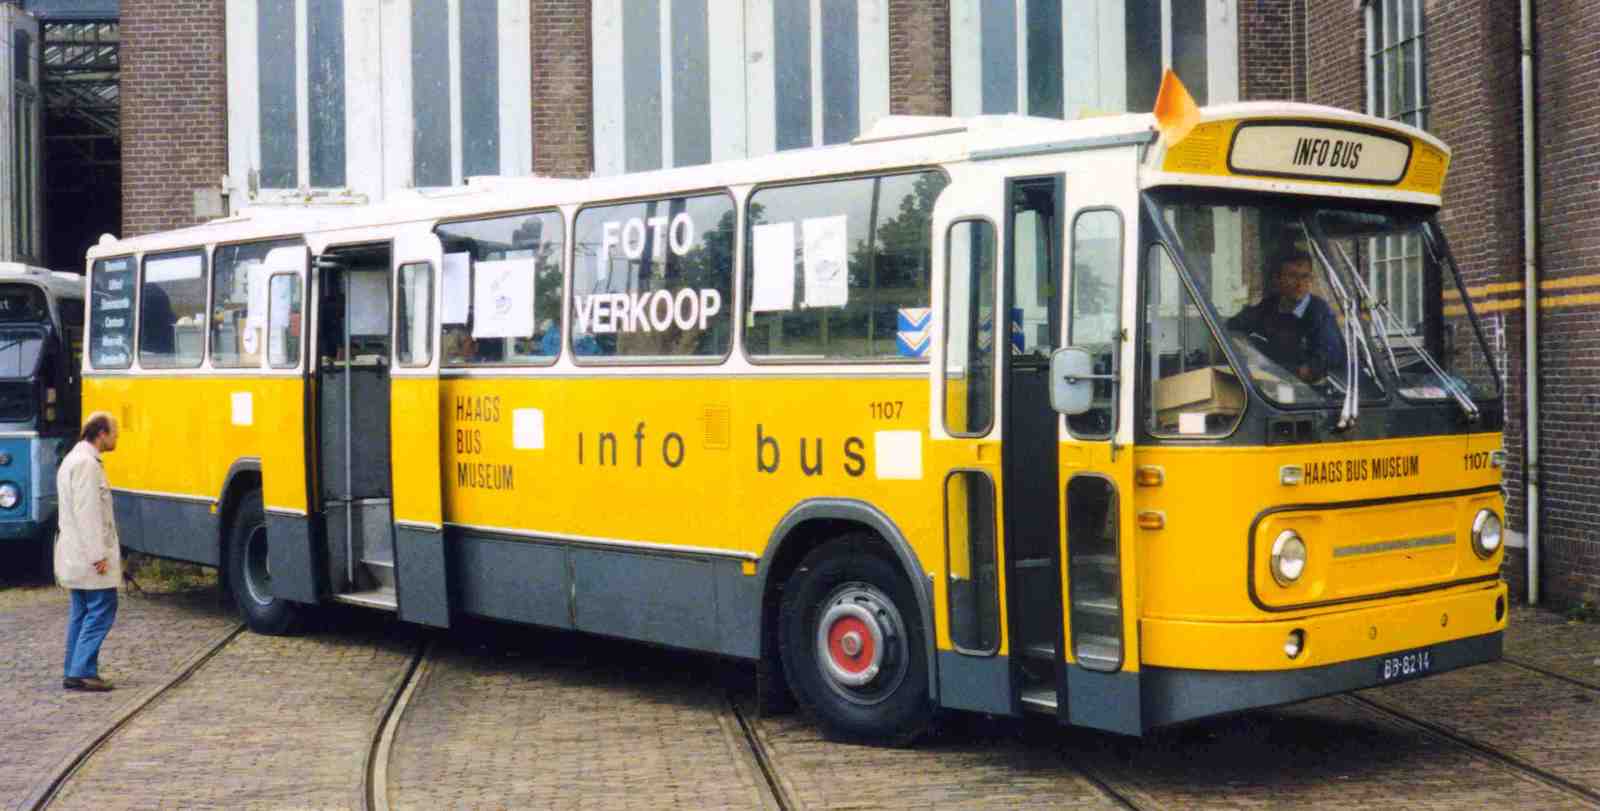 Foto van HBM Leyland-Verheul Standaardstreekbus 1107